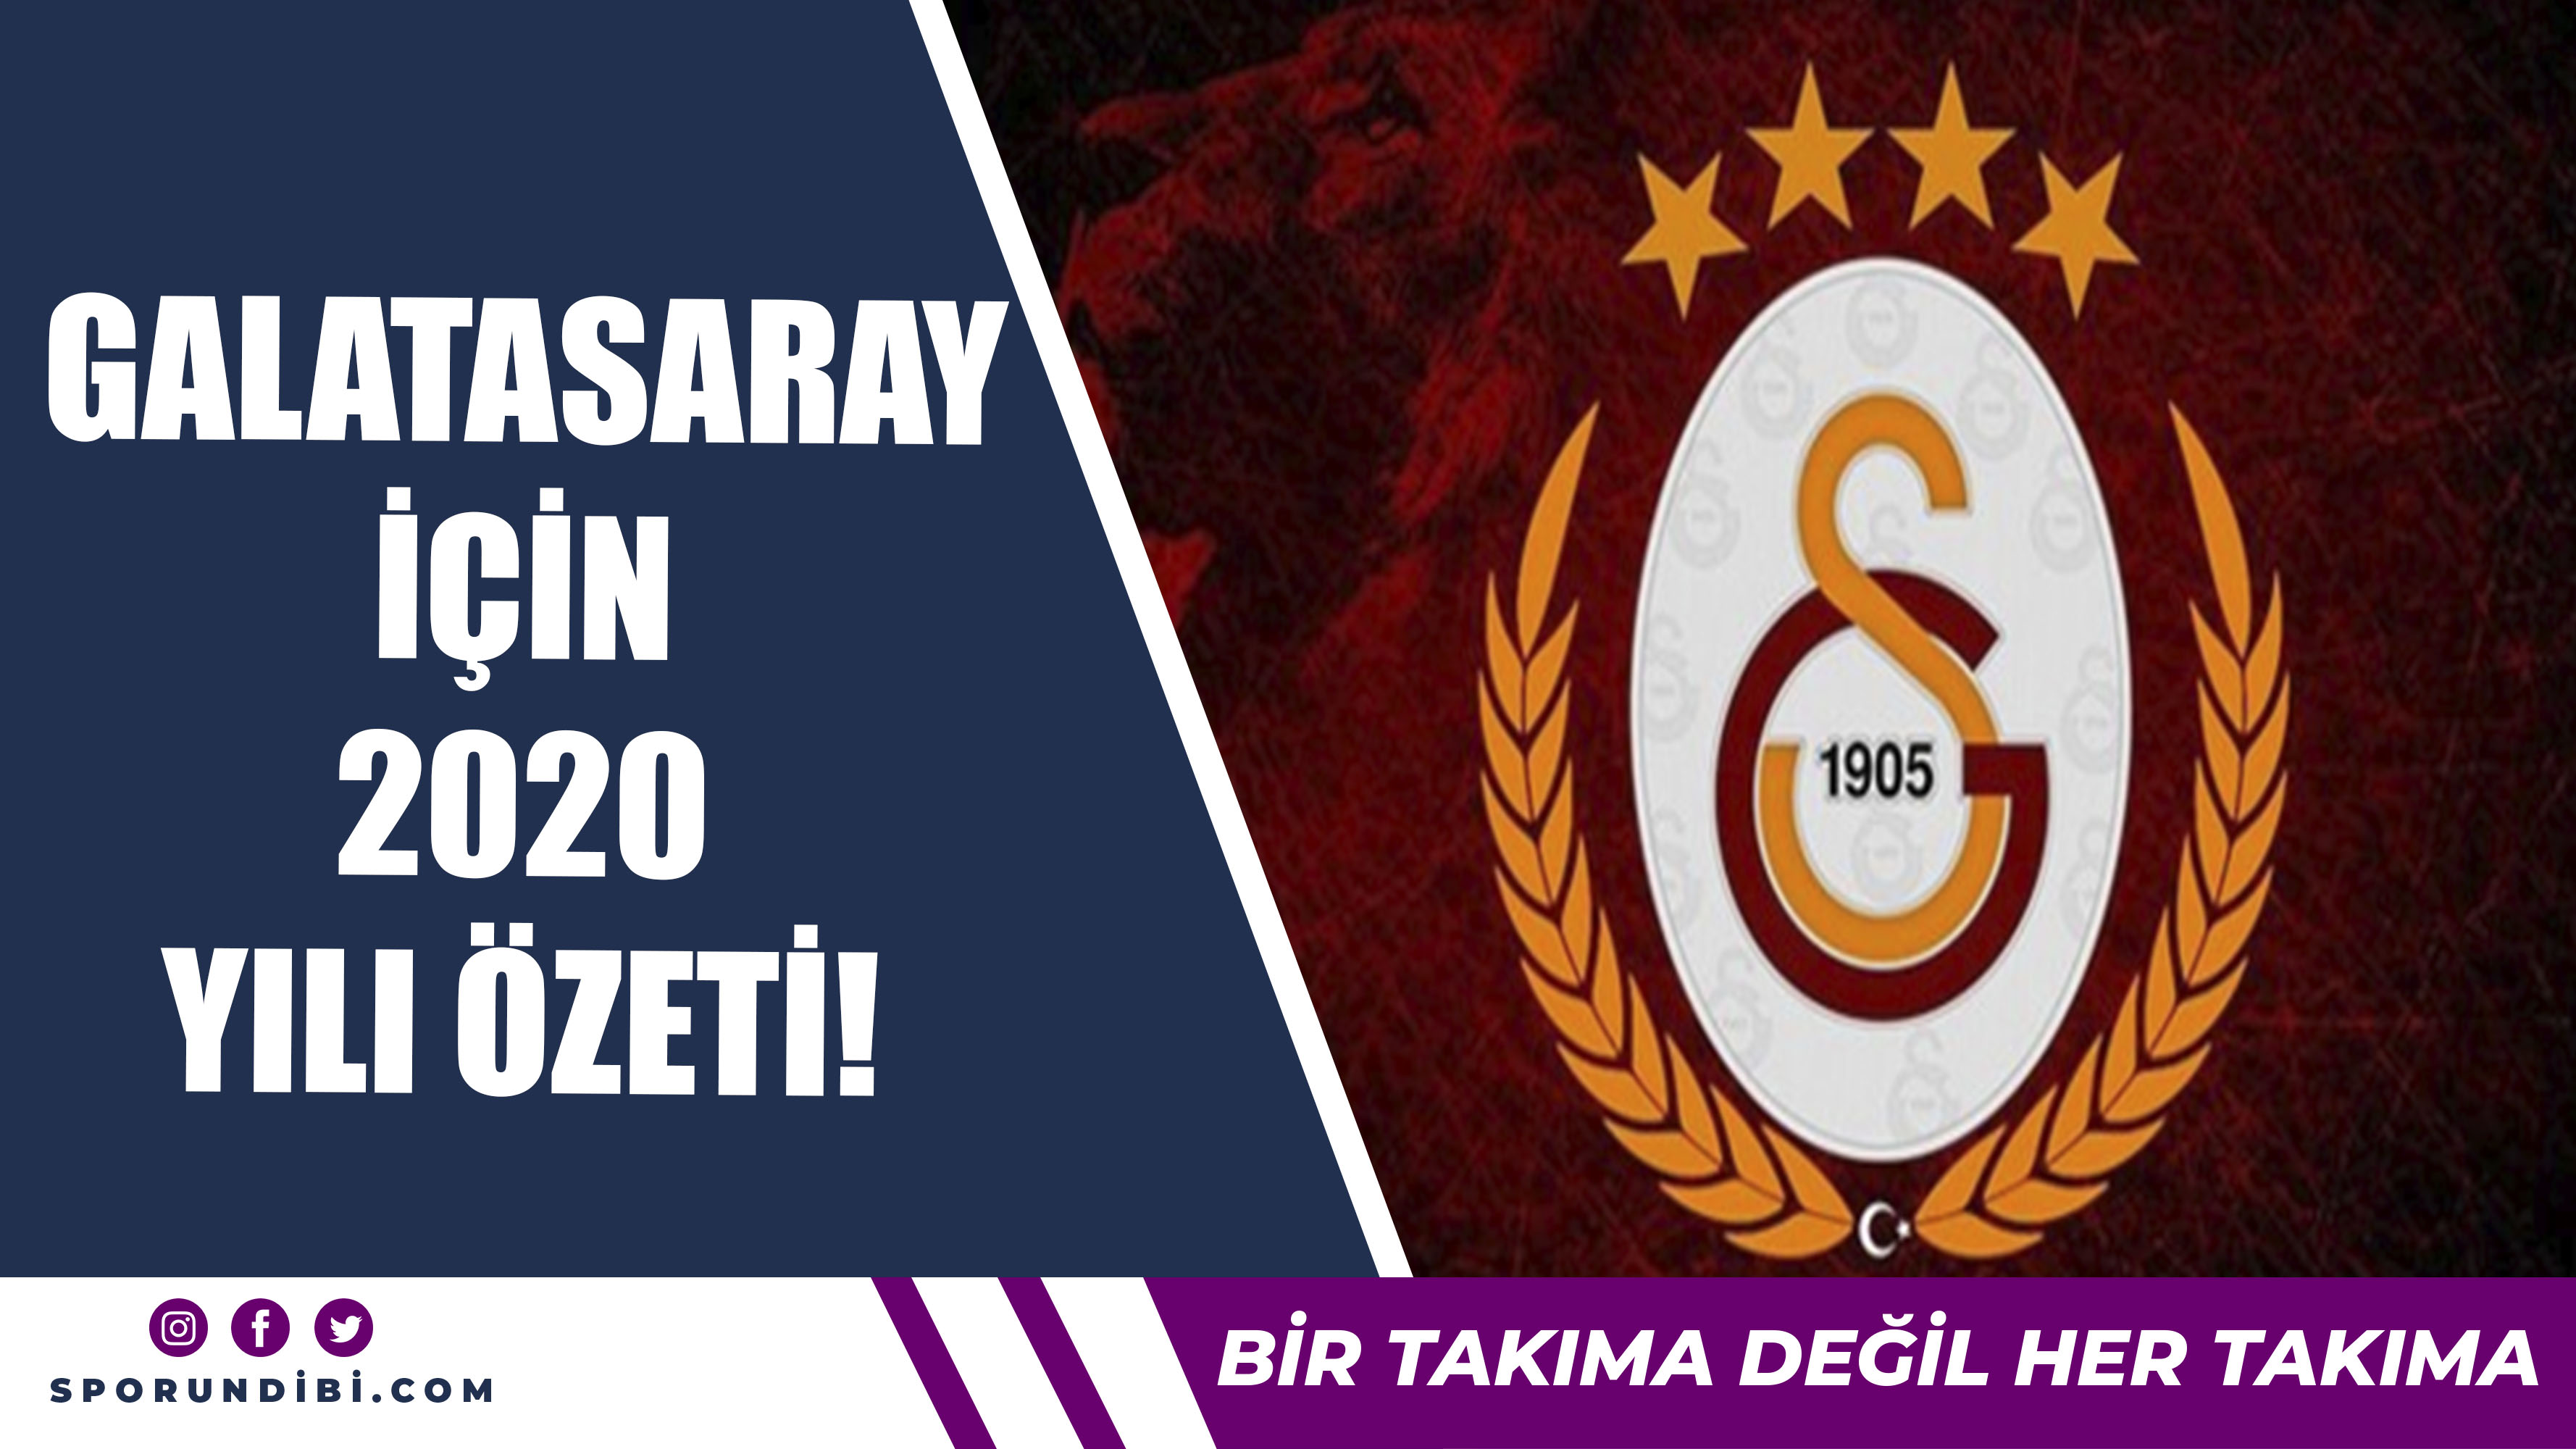 Galatasaray'da 2020 Yılı Özeti!